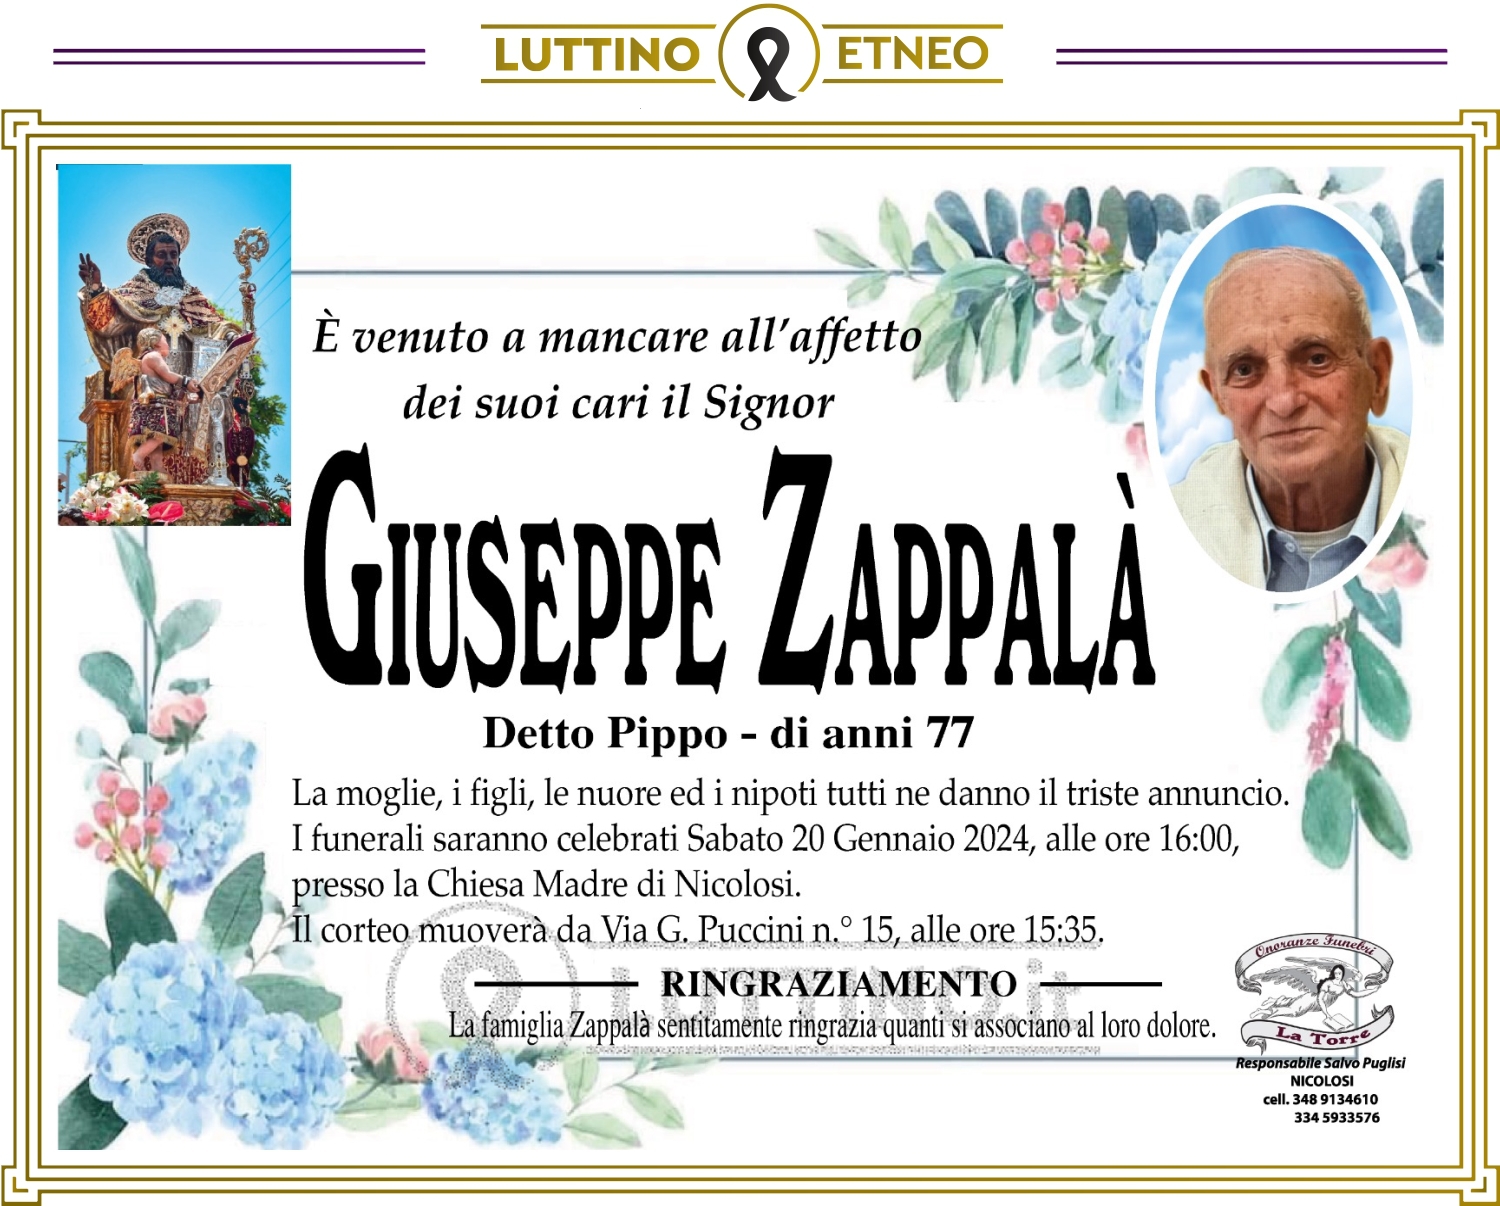 Giuseppe Zappalà